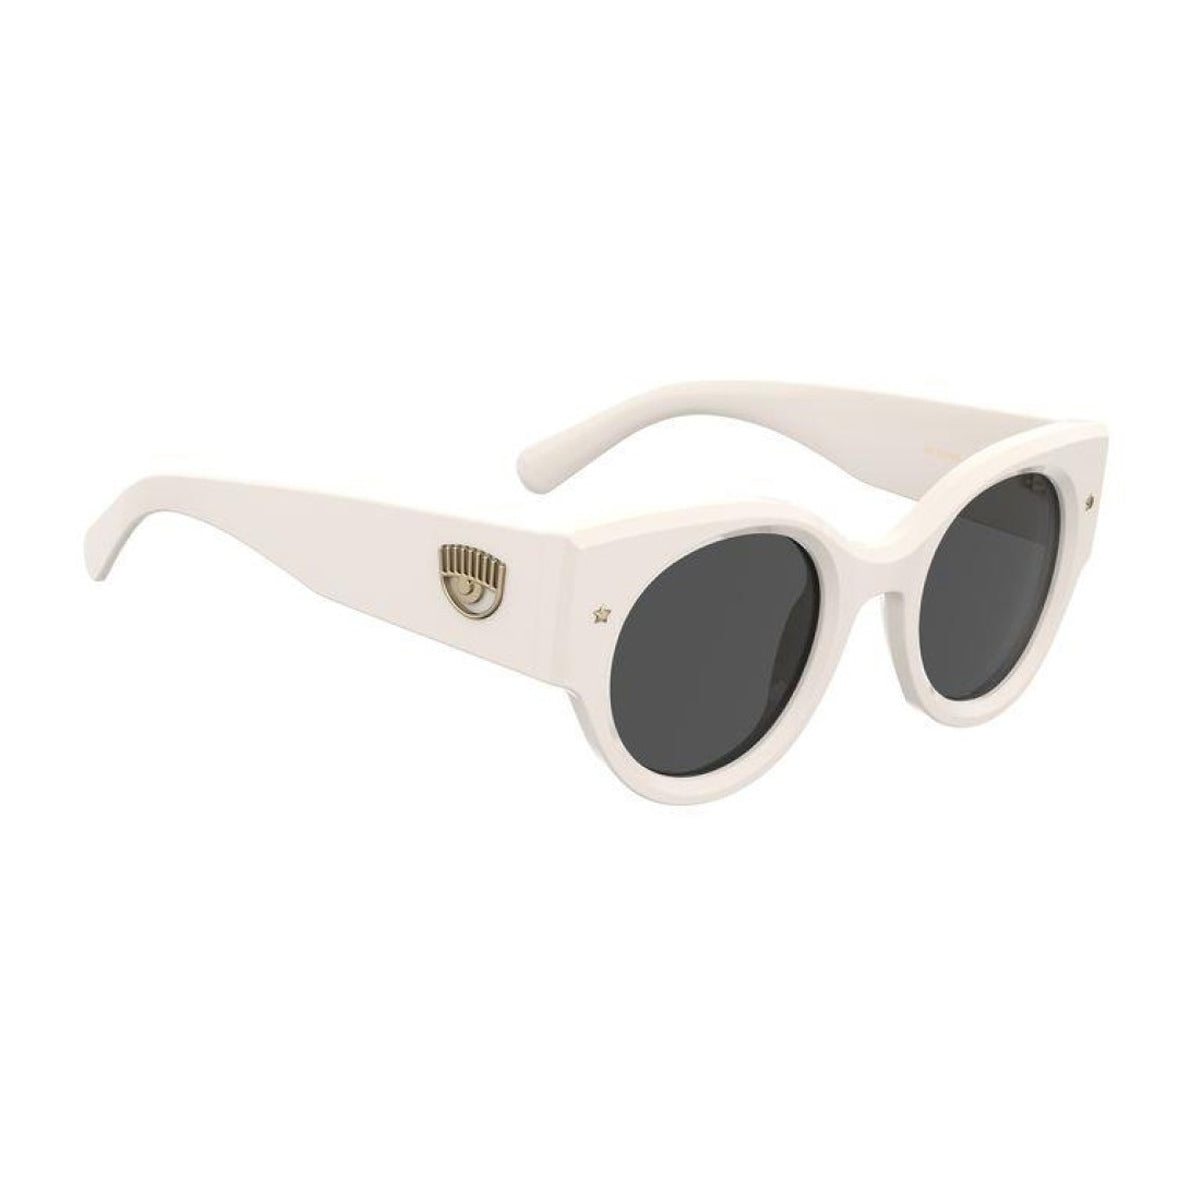 CF 7024/s VK6/IR-Occhiali da sole-Chiara Ferragni-La collezione di occhiali di Chiara Ferragni rappresenta un'armoniosa fusione di stile e creatività. Questi occhiali, ideati dalla celebre influencer, sono curati nei minimi dettagli e caratterizzati da un design cool, chic e all'avanguardia. Questo modello presenta una montatura dalla forma tonda dalle linee cat-eye. Le aste decorate con l'oversized eyelike sono perfettamente equilibrate da una sofisticata stella in metallo sul frontale. - Dresso